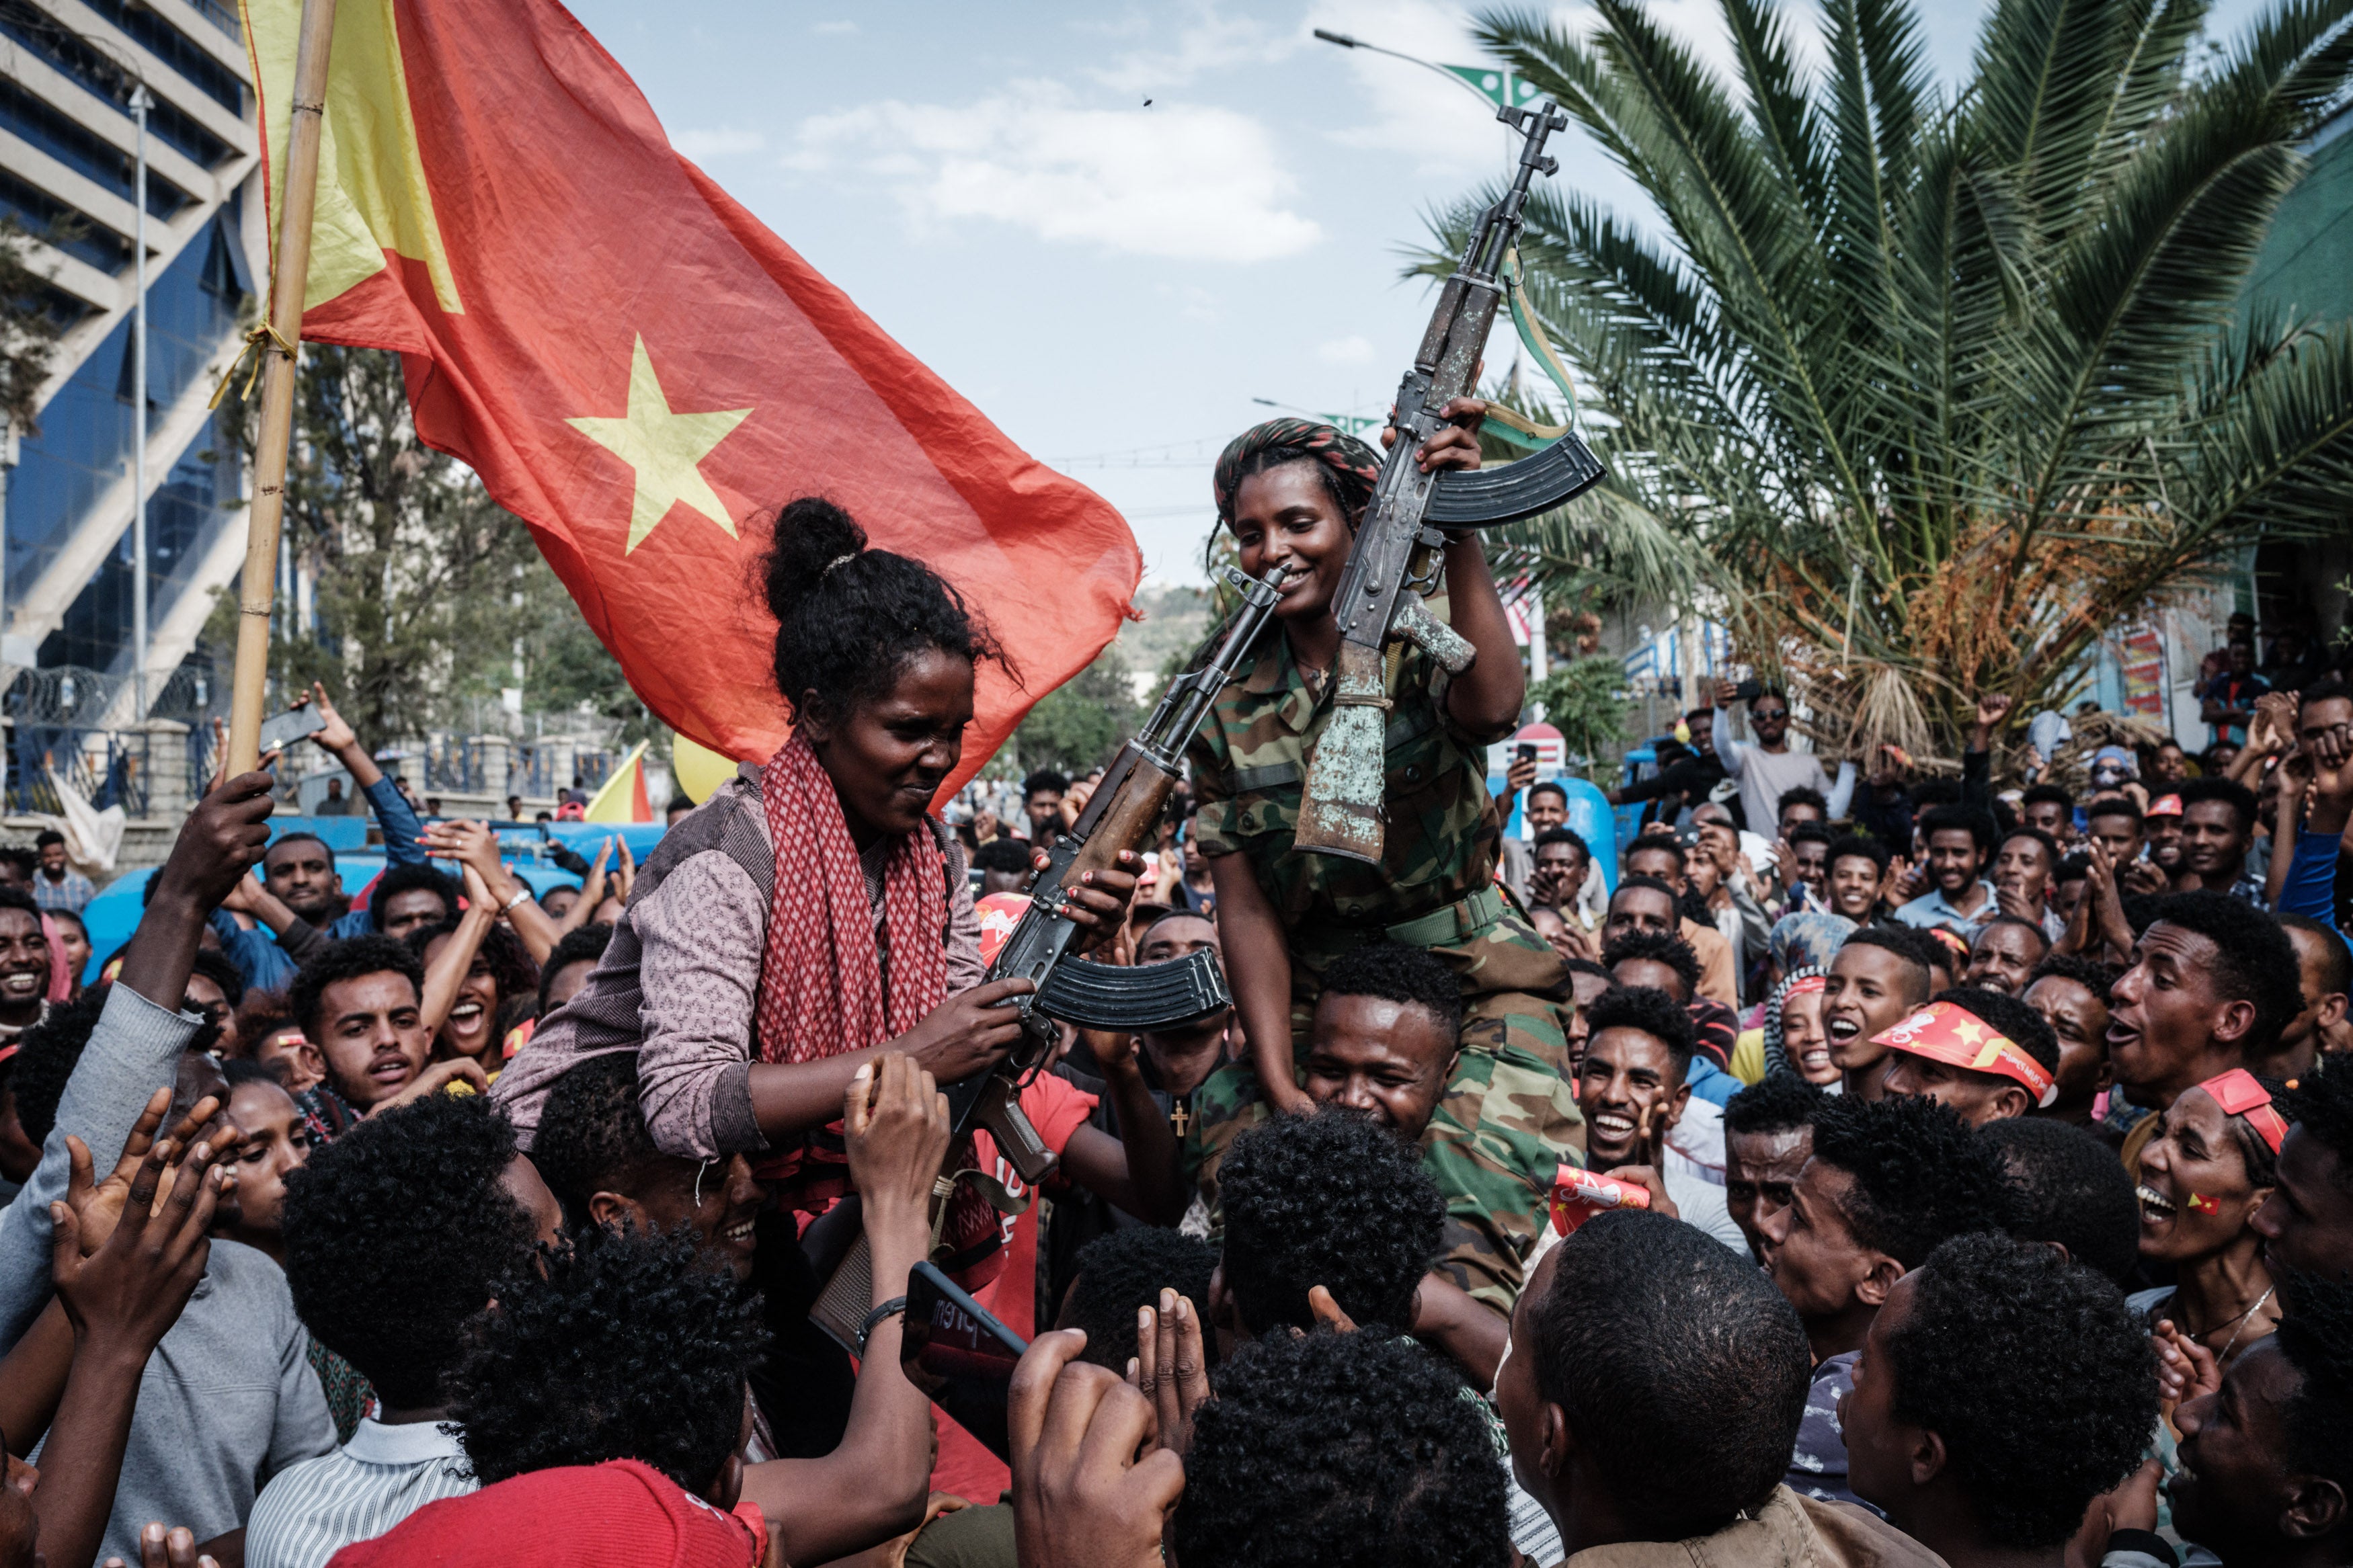 Tigrayan rebels celebrate regaining territory from Ethiopian and Eritrean forces in June 2021